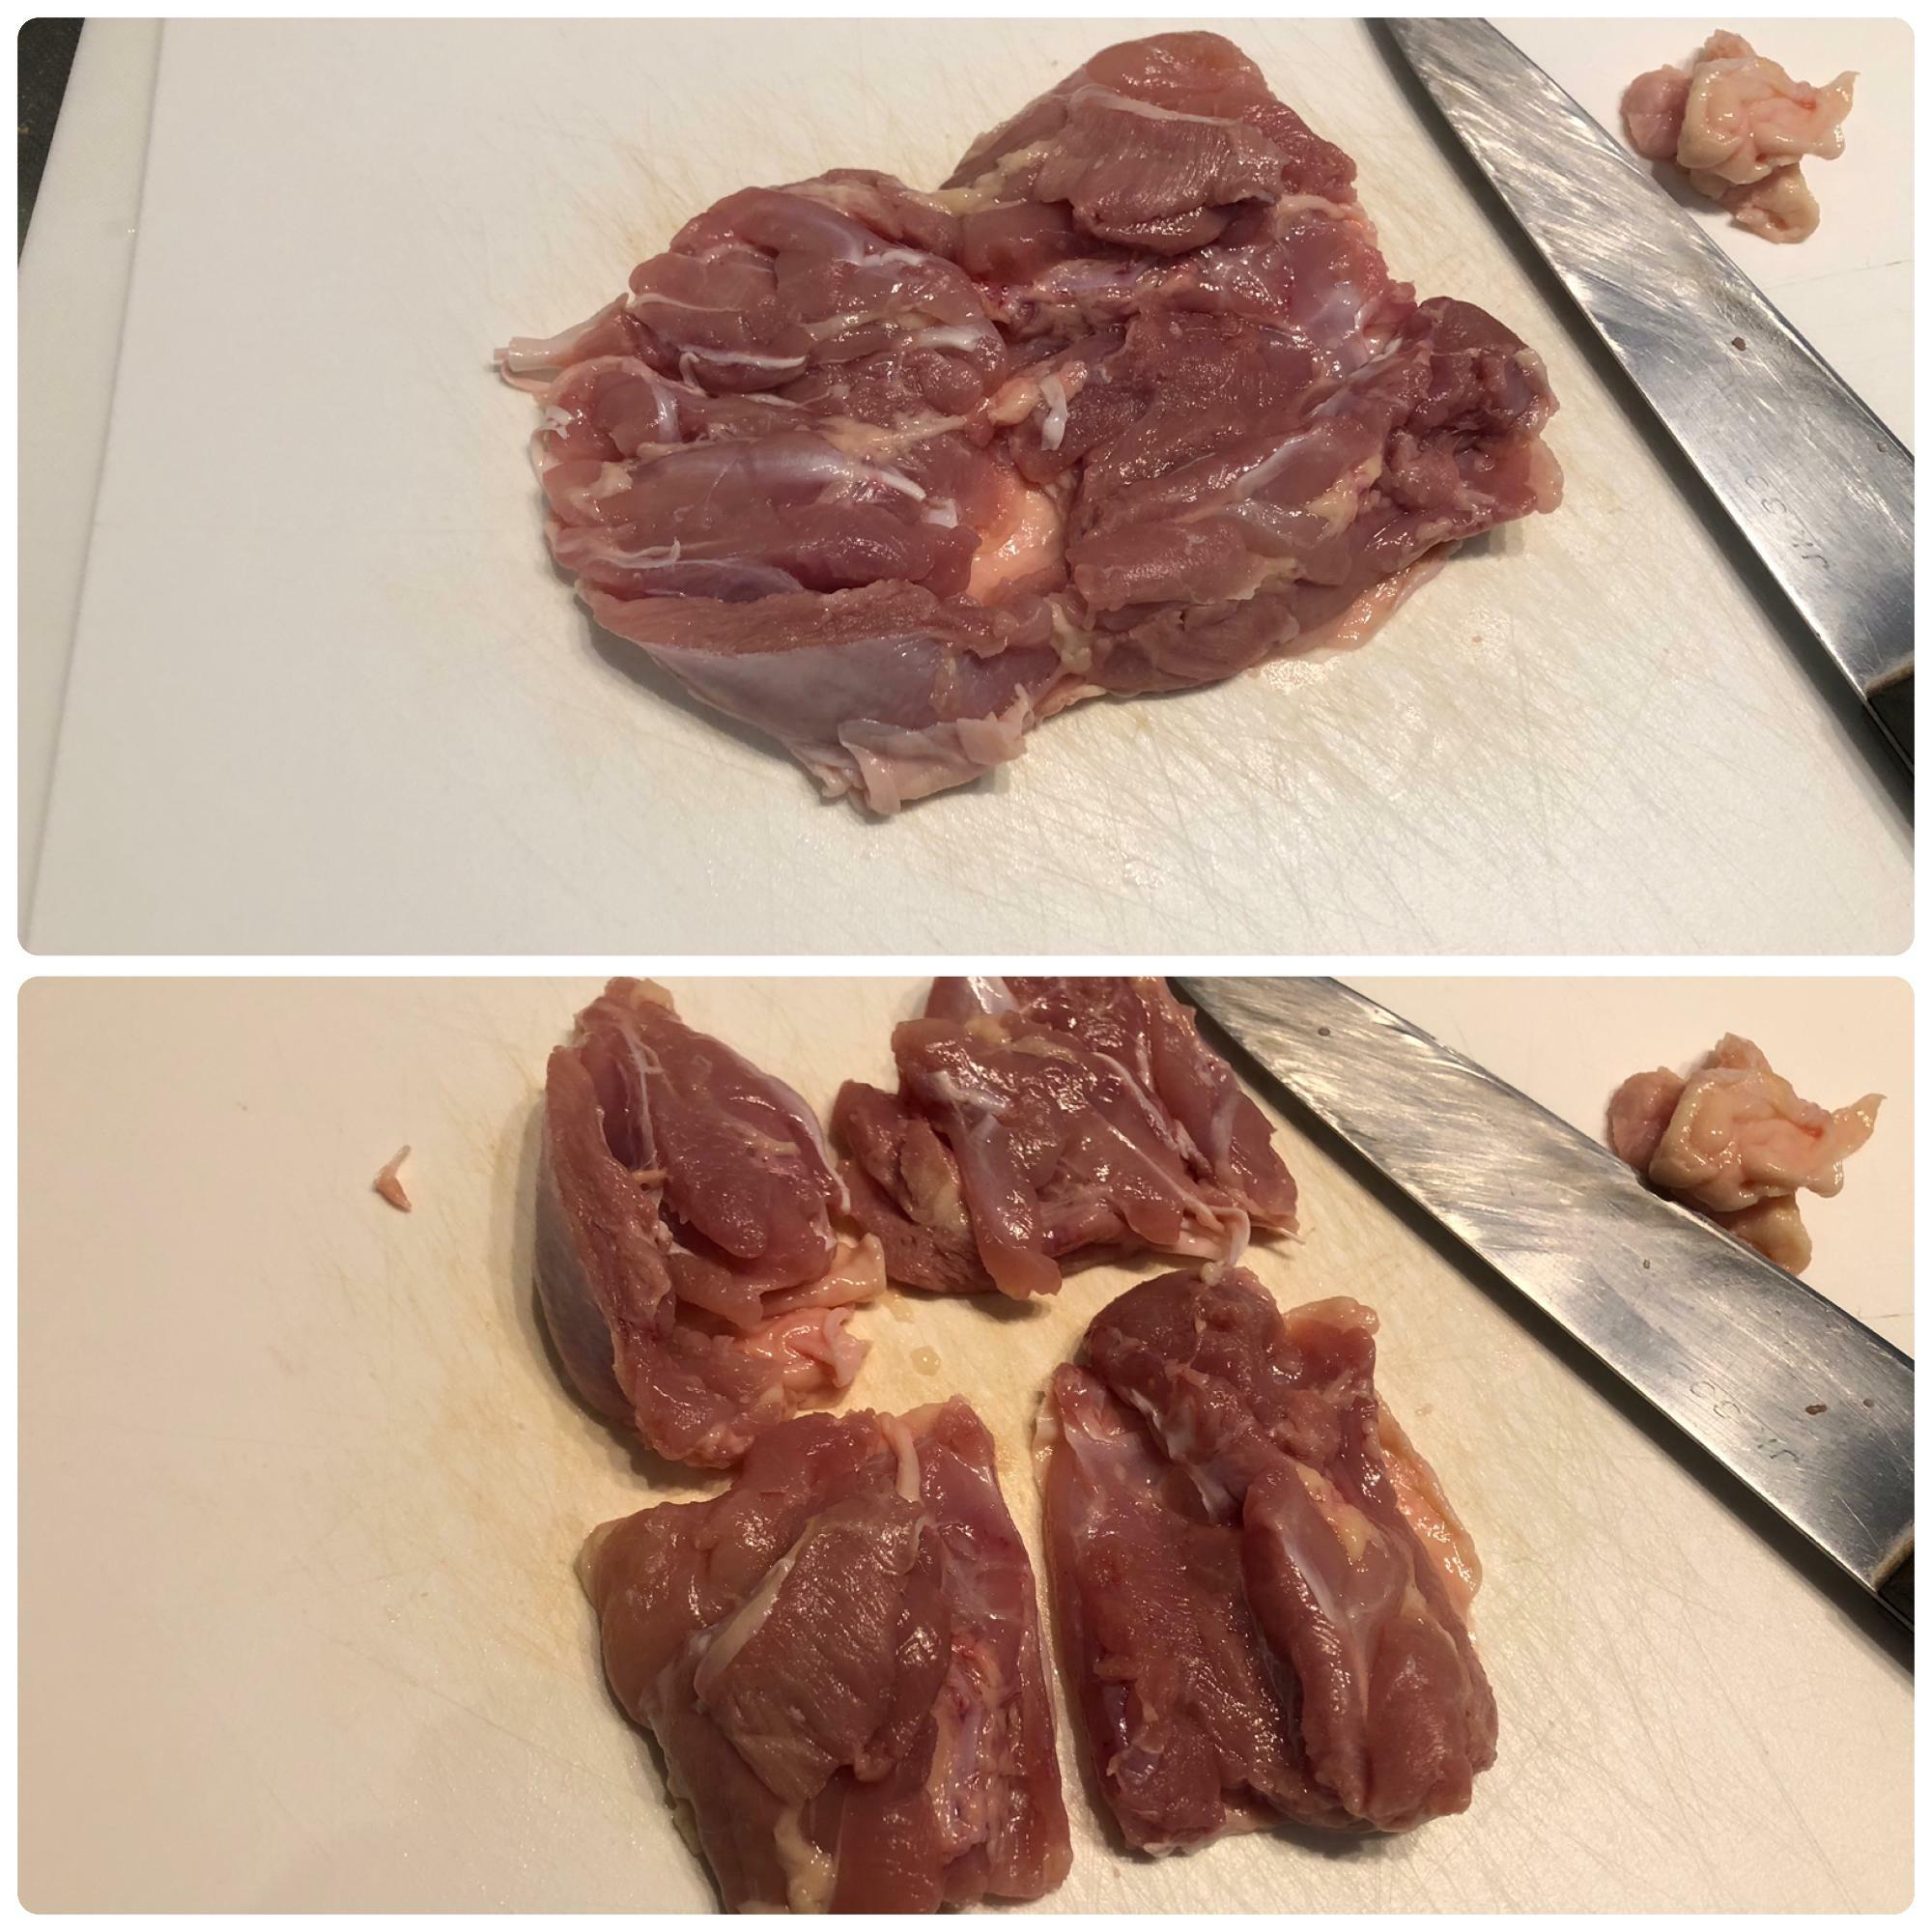 モモ肉は4つに切り分けました。